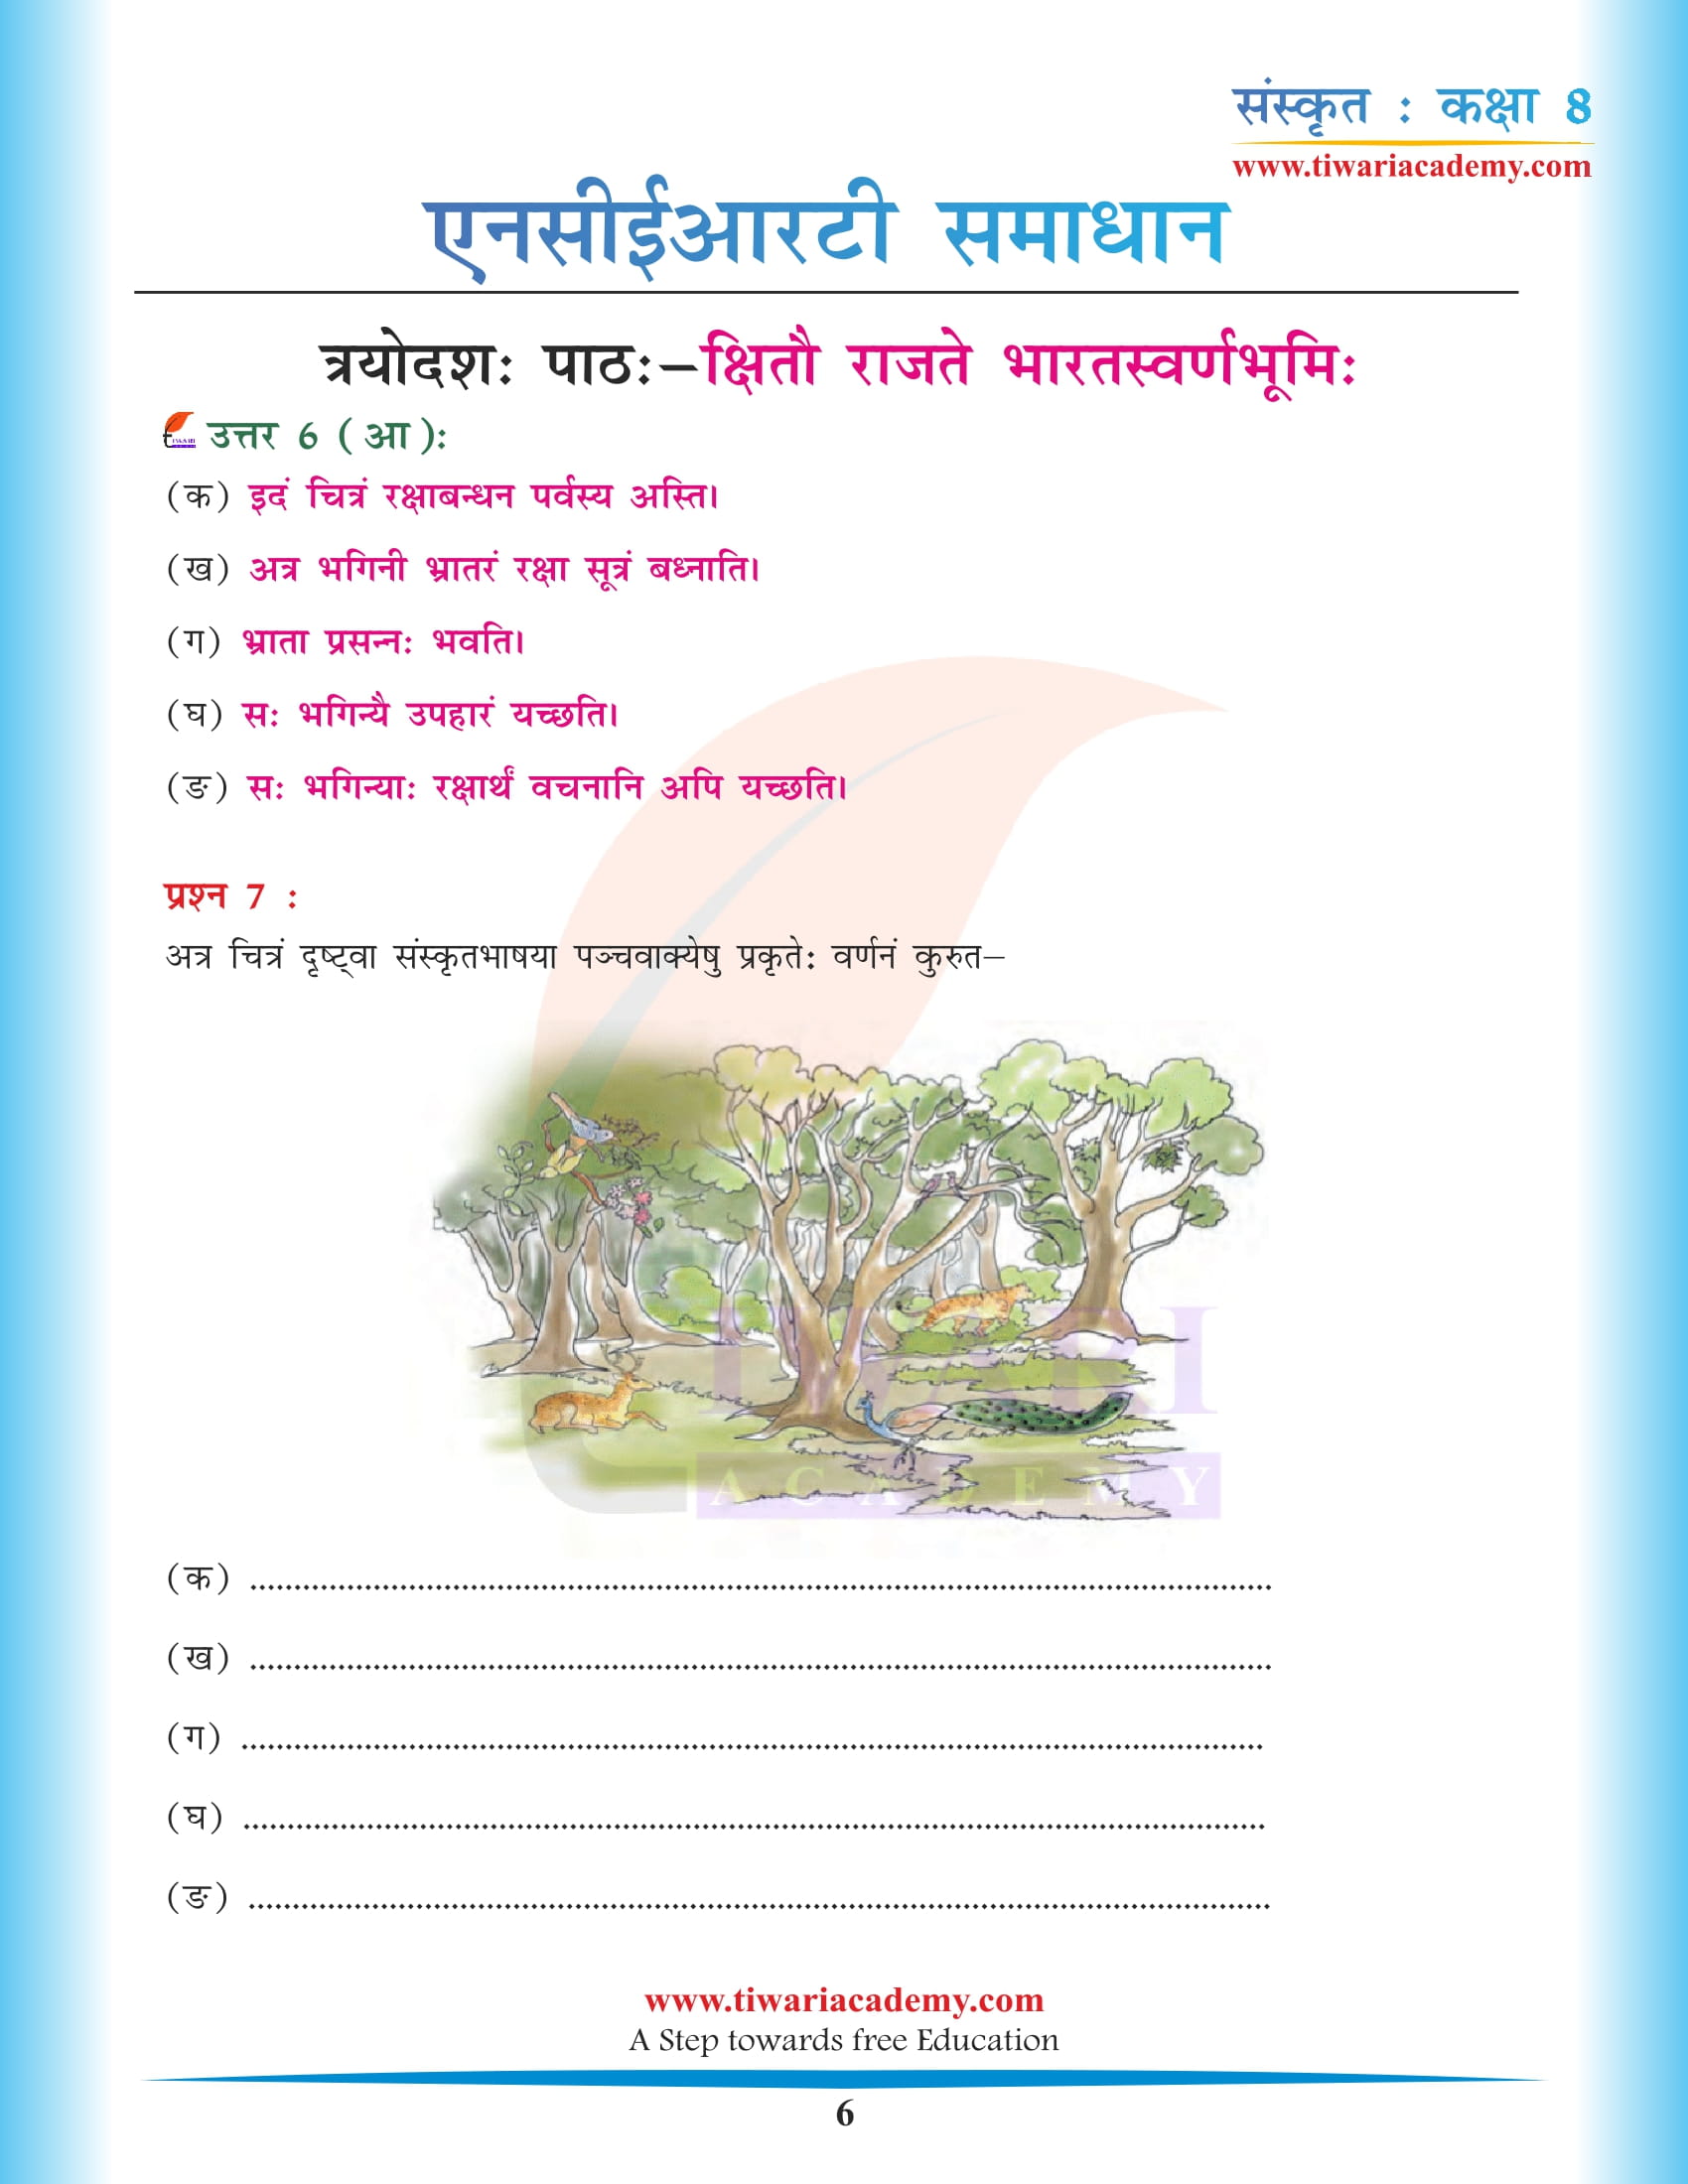 कक्षा 8 संस्कृत अध्याय 13 के हल मुफ़्त डाउनलोड